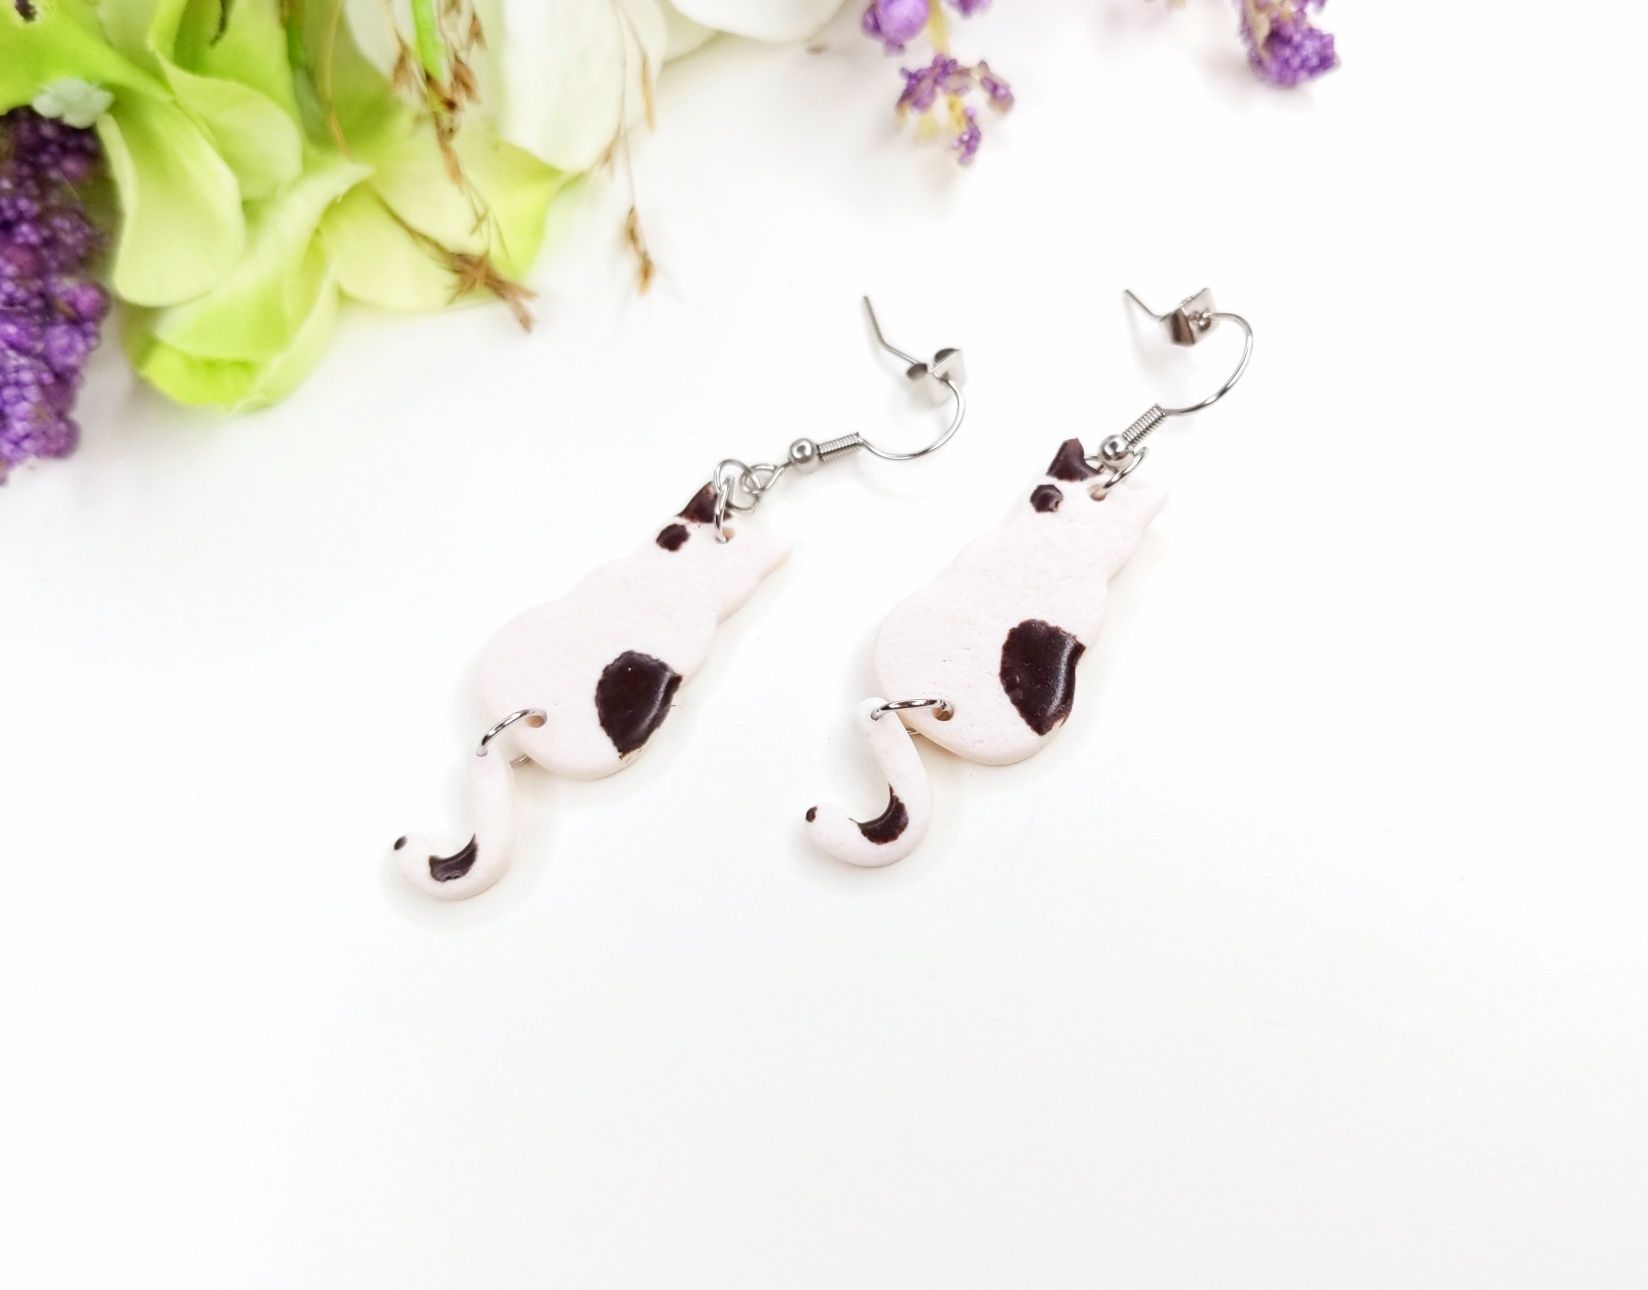 Kolczyki biało-brazowe koty handmade